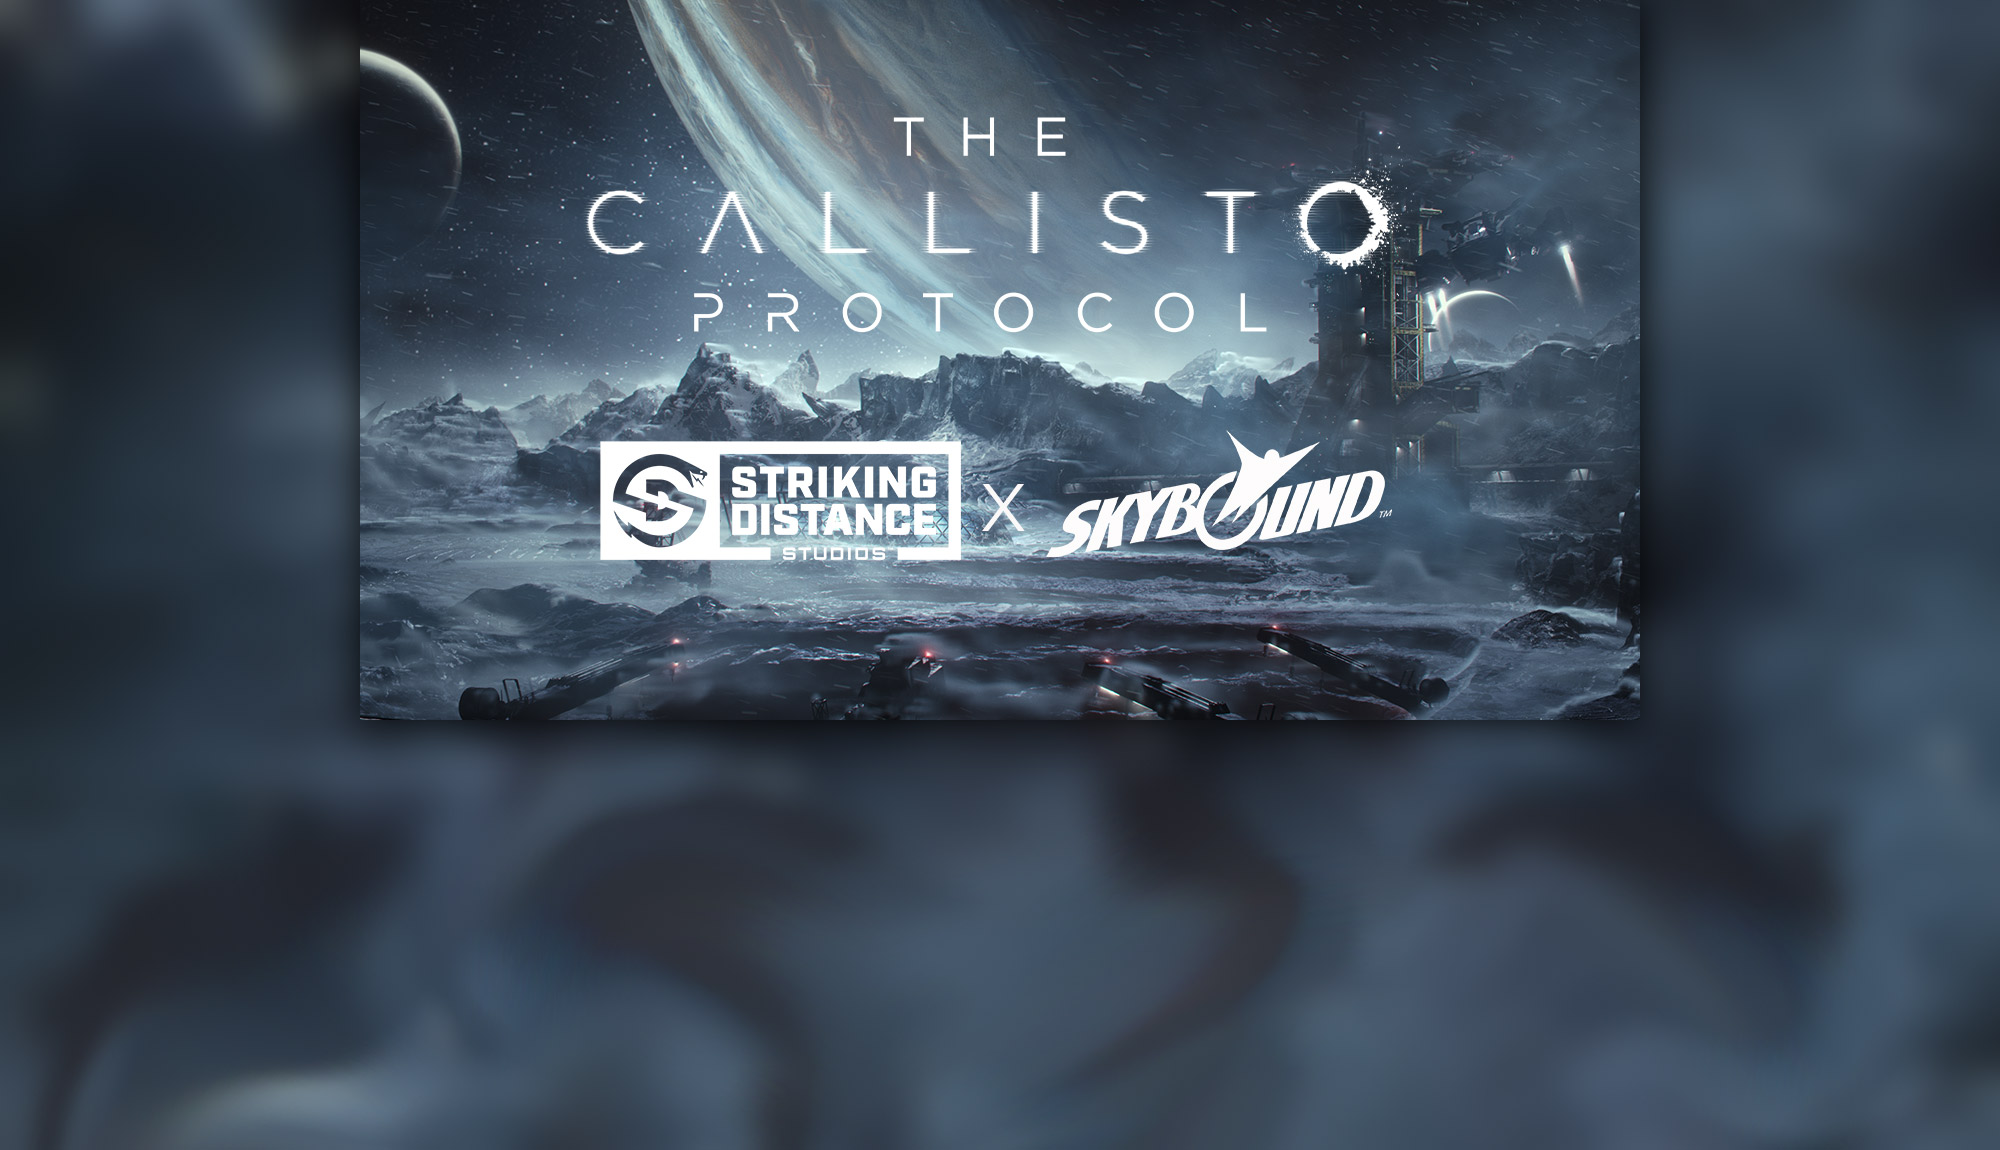 The callisto protocol русификатор звука. The Callisto Protocol логотип. Striking distance Studios. The Callisto Protocol системные требования. The Callisto Protocol ps4 диск.